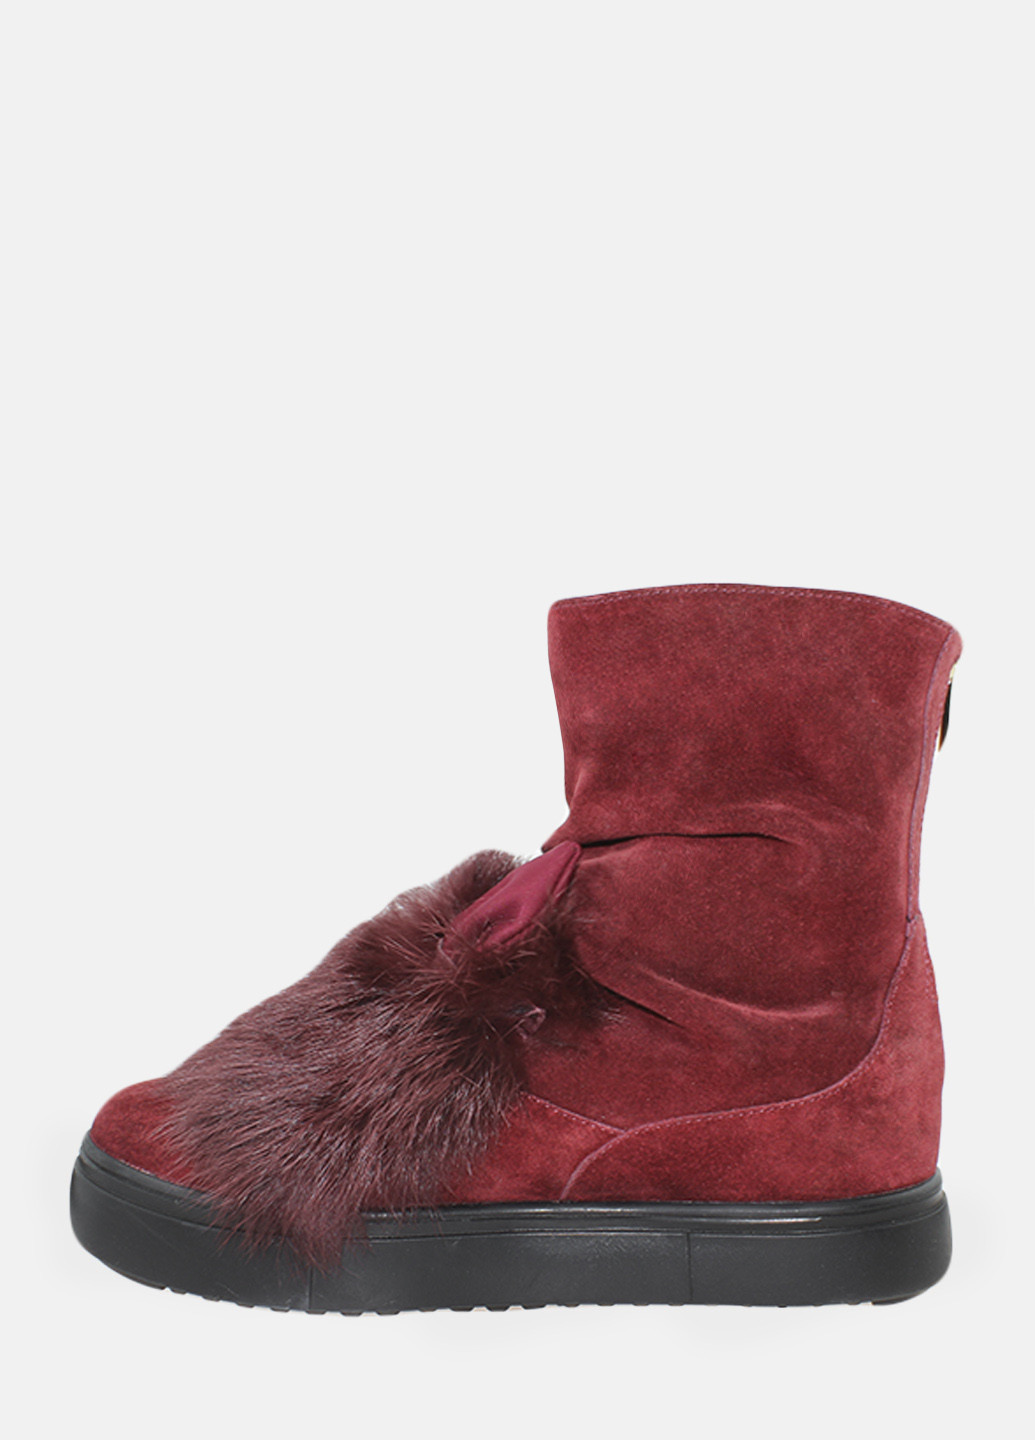 Зимние ботинки rsm153-11 бордовый Sothby's из натуральной замши